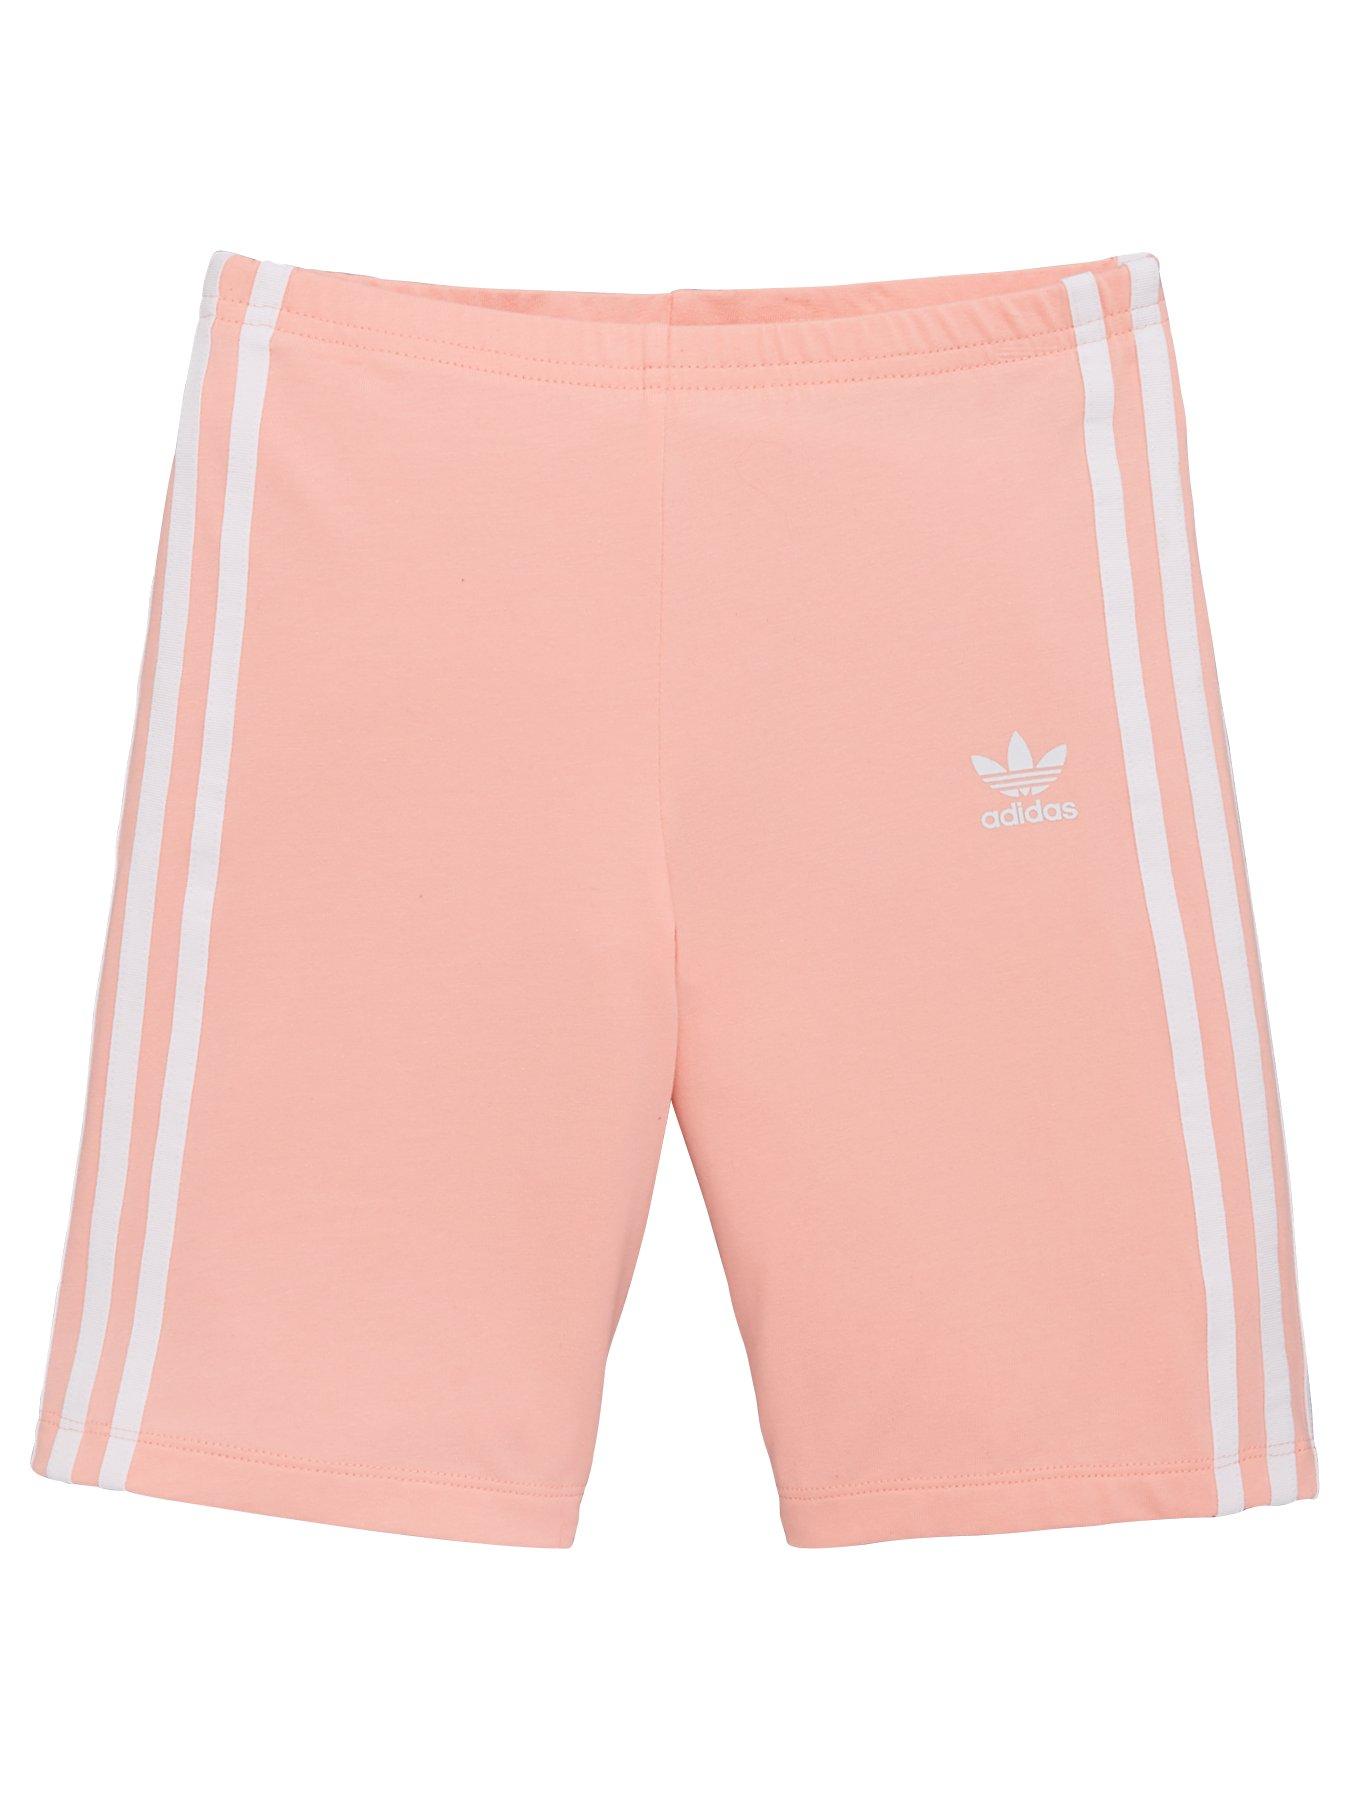 adidas Originals Cycling Shorts - Pink 